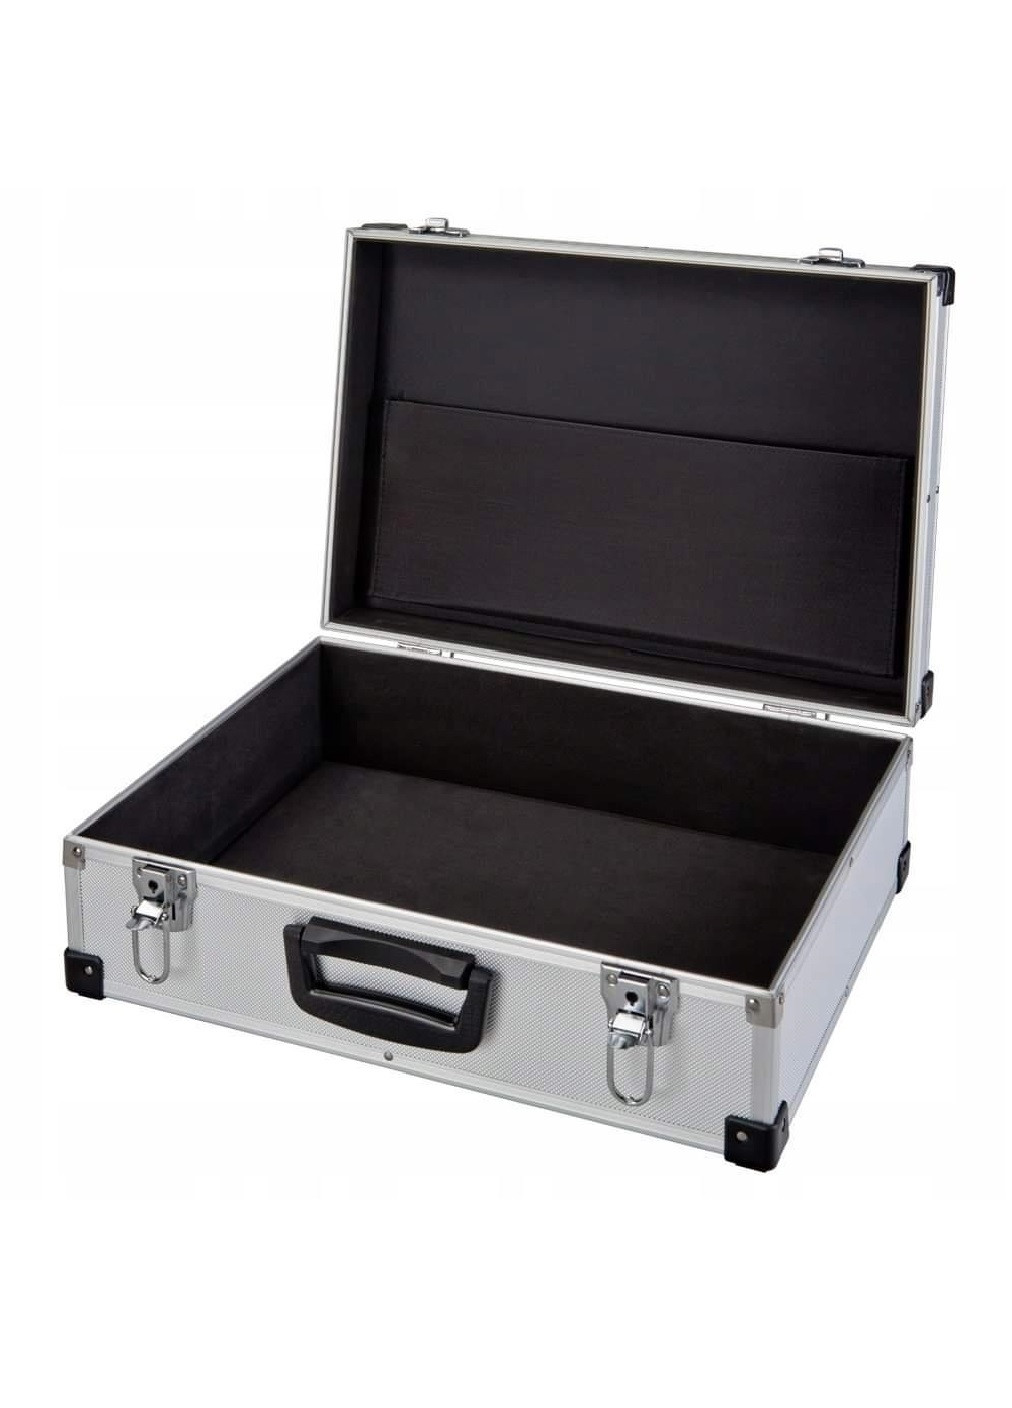 Кейс чемодан алюминиевый для безопасного хранения перевозки переноски транспортировки вещей 33х21х9 см (474884-Prob) Unbranded (260090826)